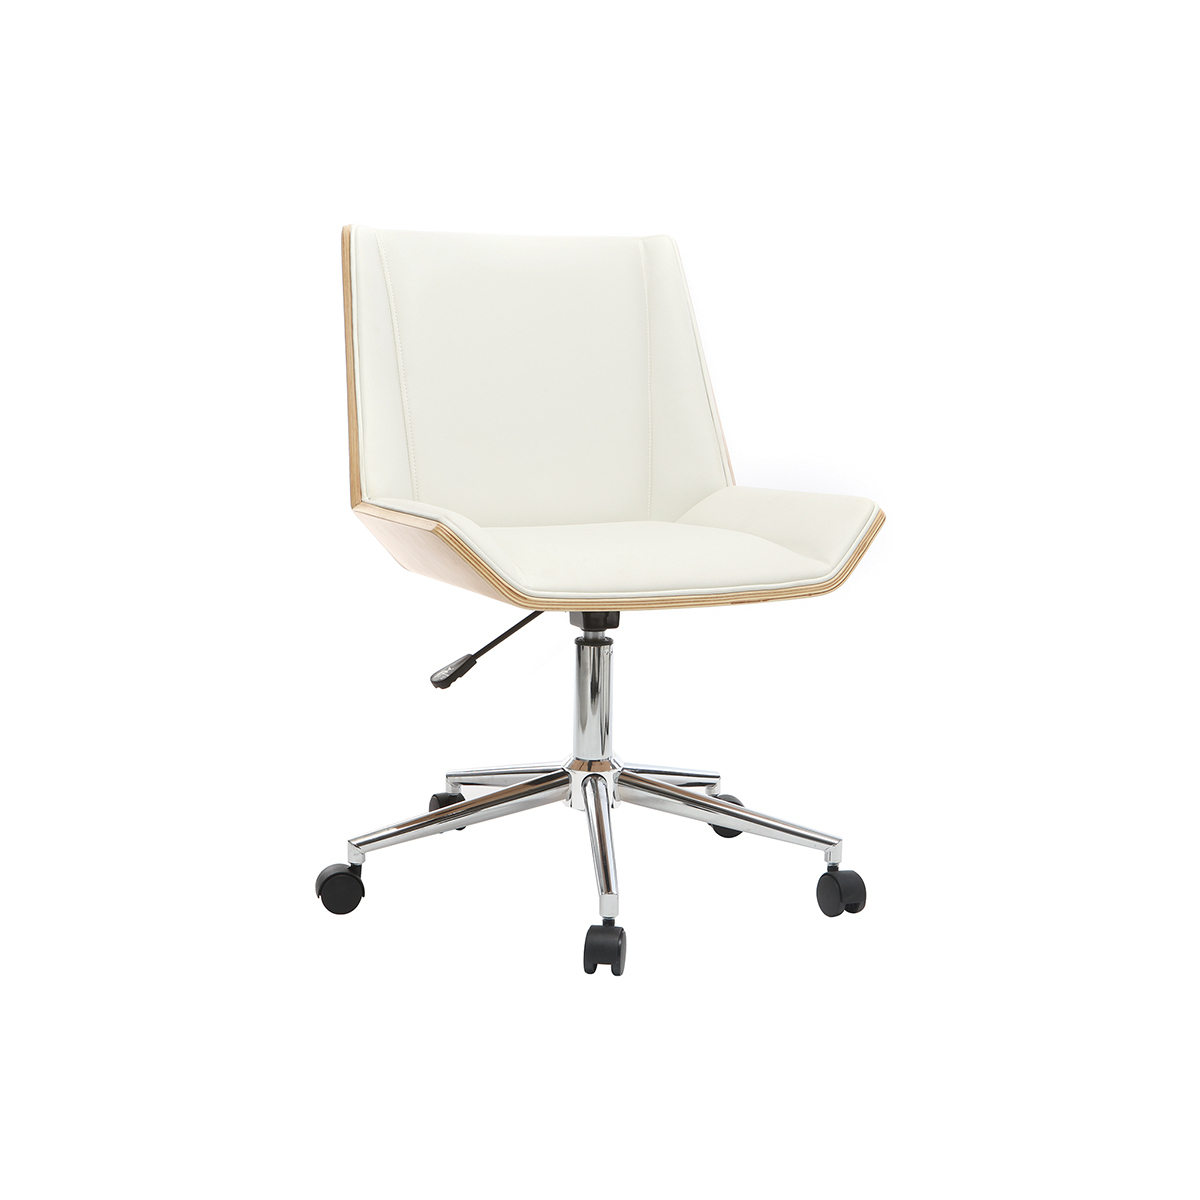 Chaise de bureau à roulettes design blanc, bois clair et acier chromé MELKIOR vue1